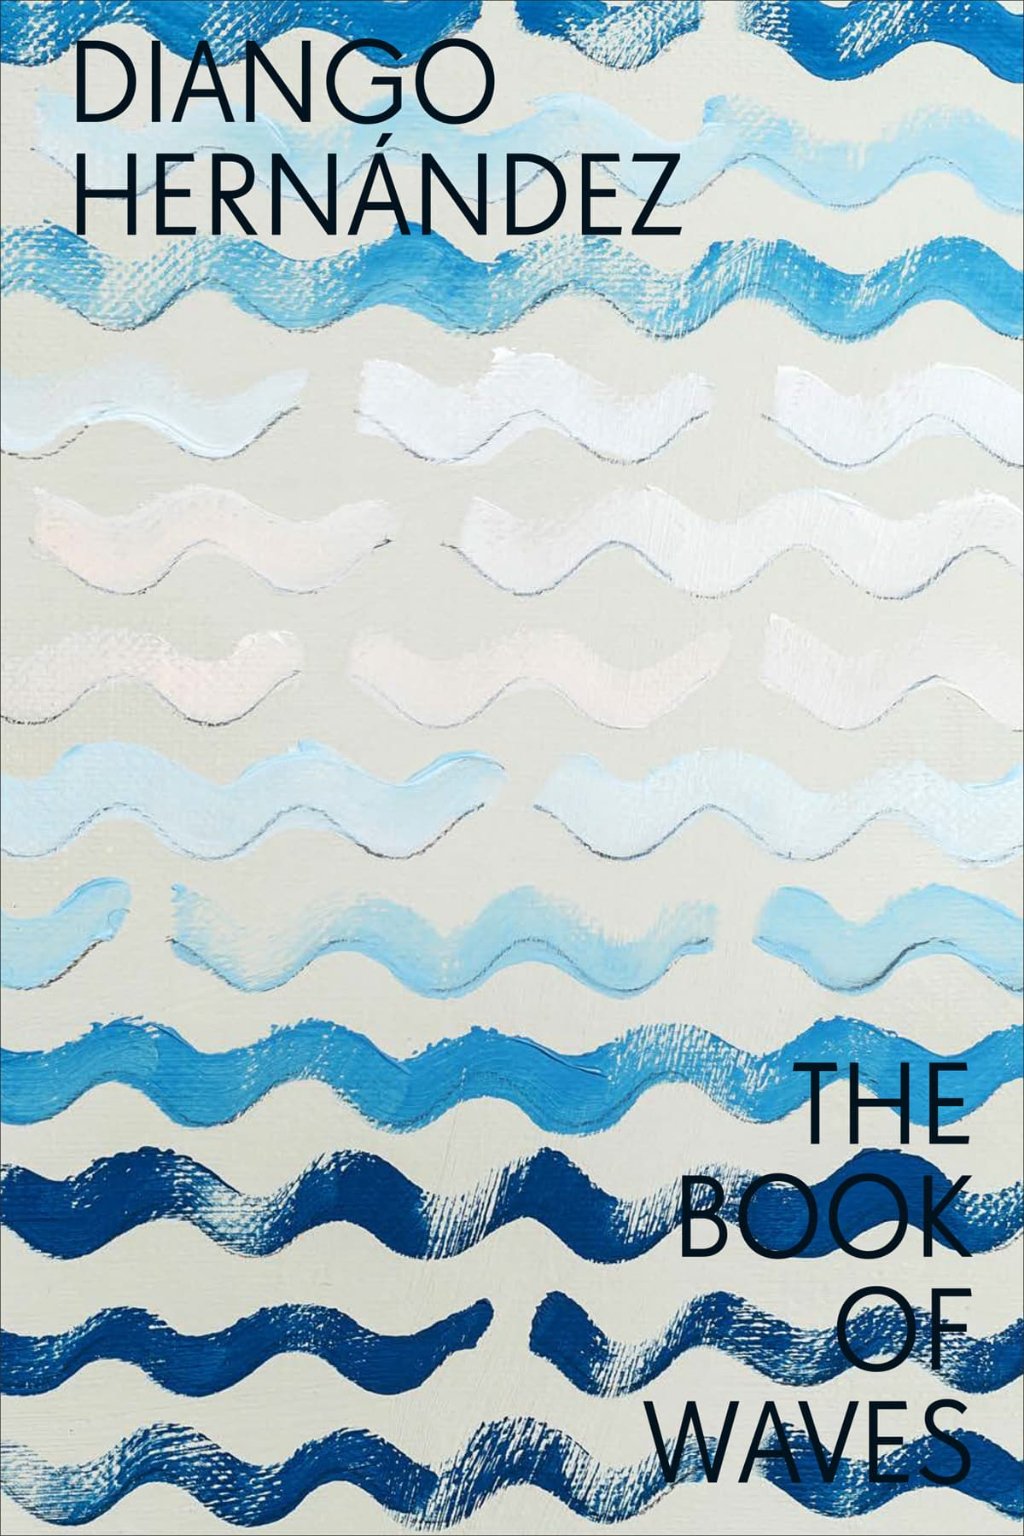 Diango Hernández. The Book of Waves - Diango Hernandez Studio